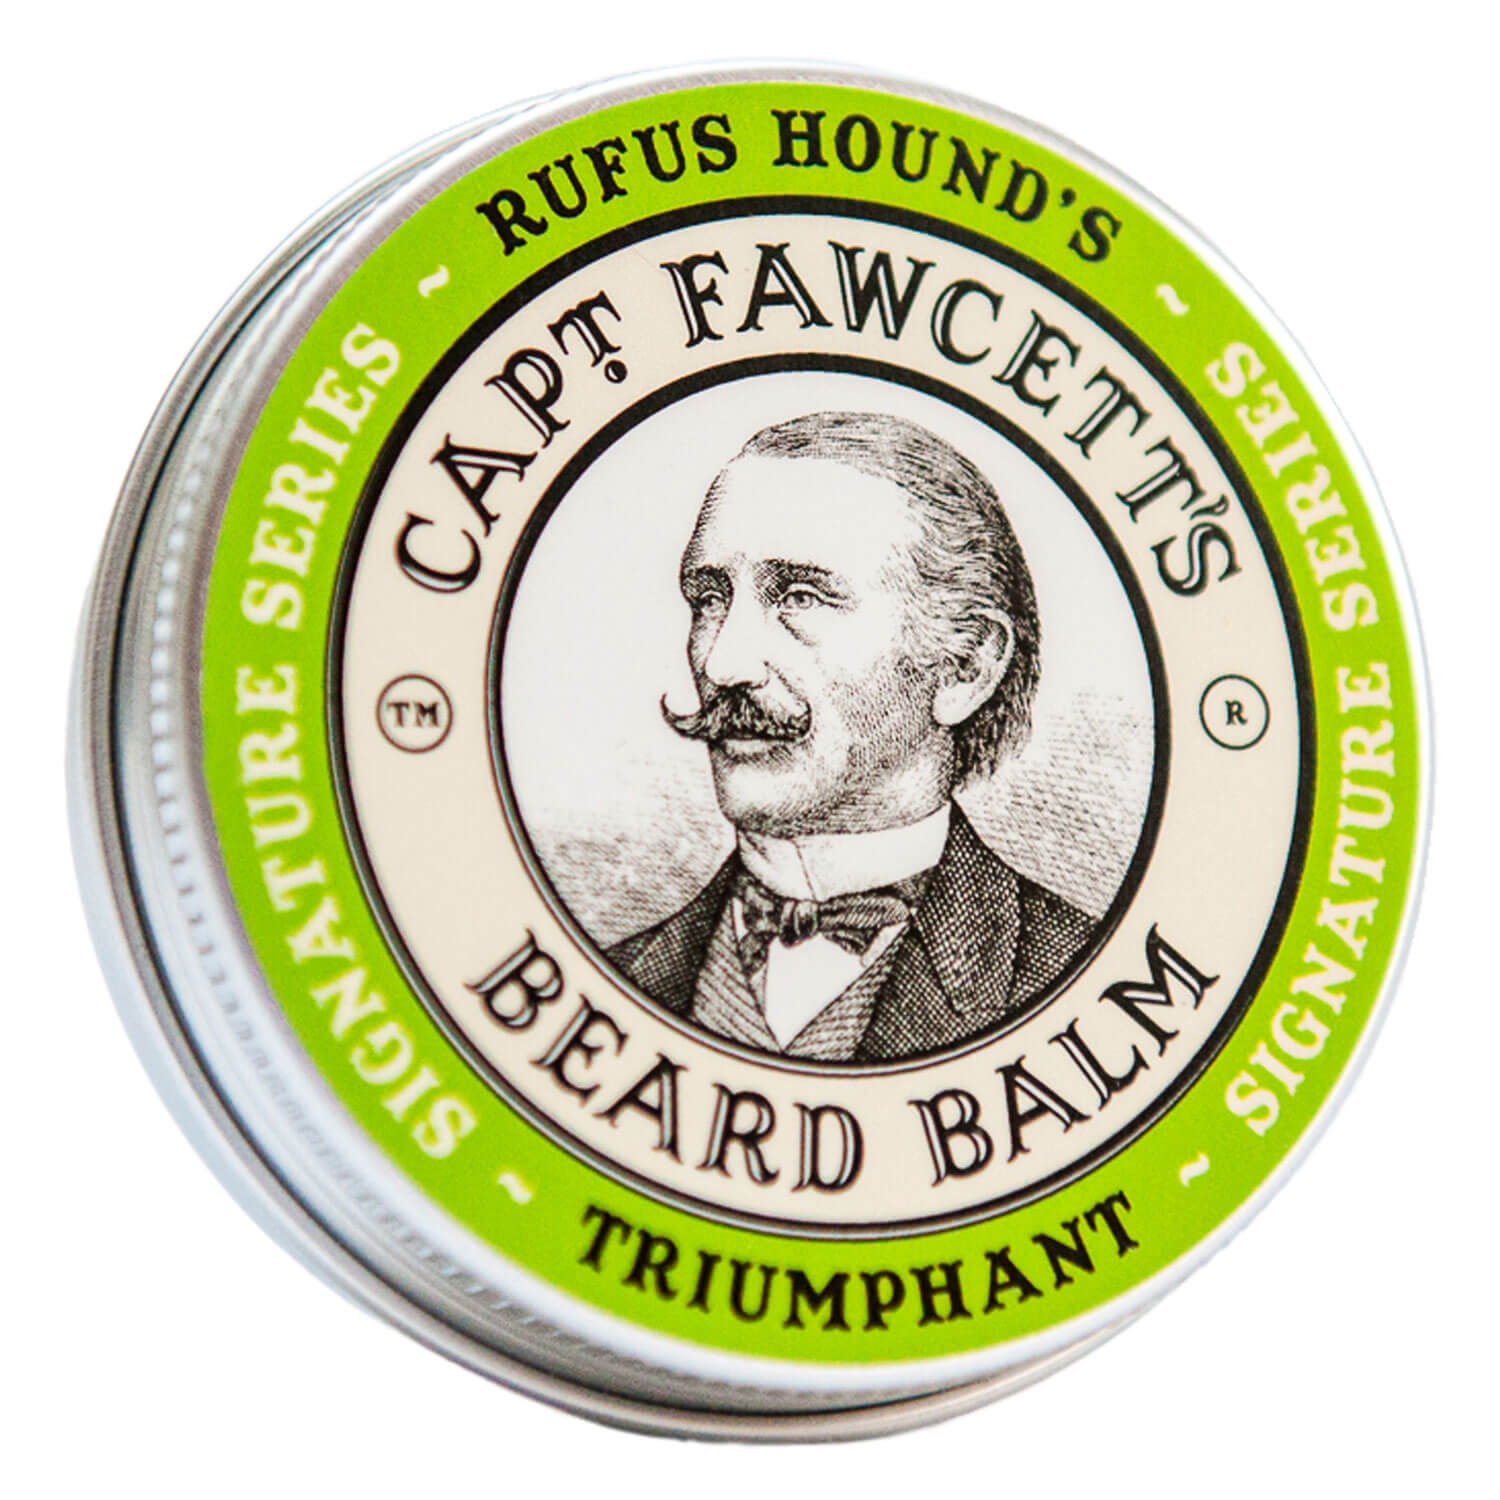 Produktbild von Capt. Fawcett Care - Triumphant Beard Balm